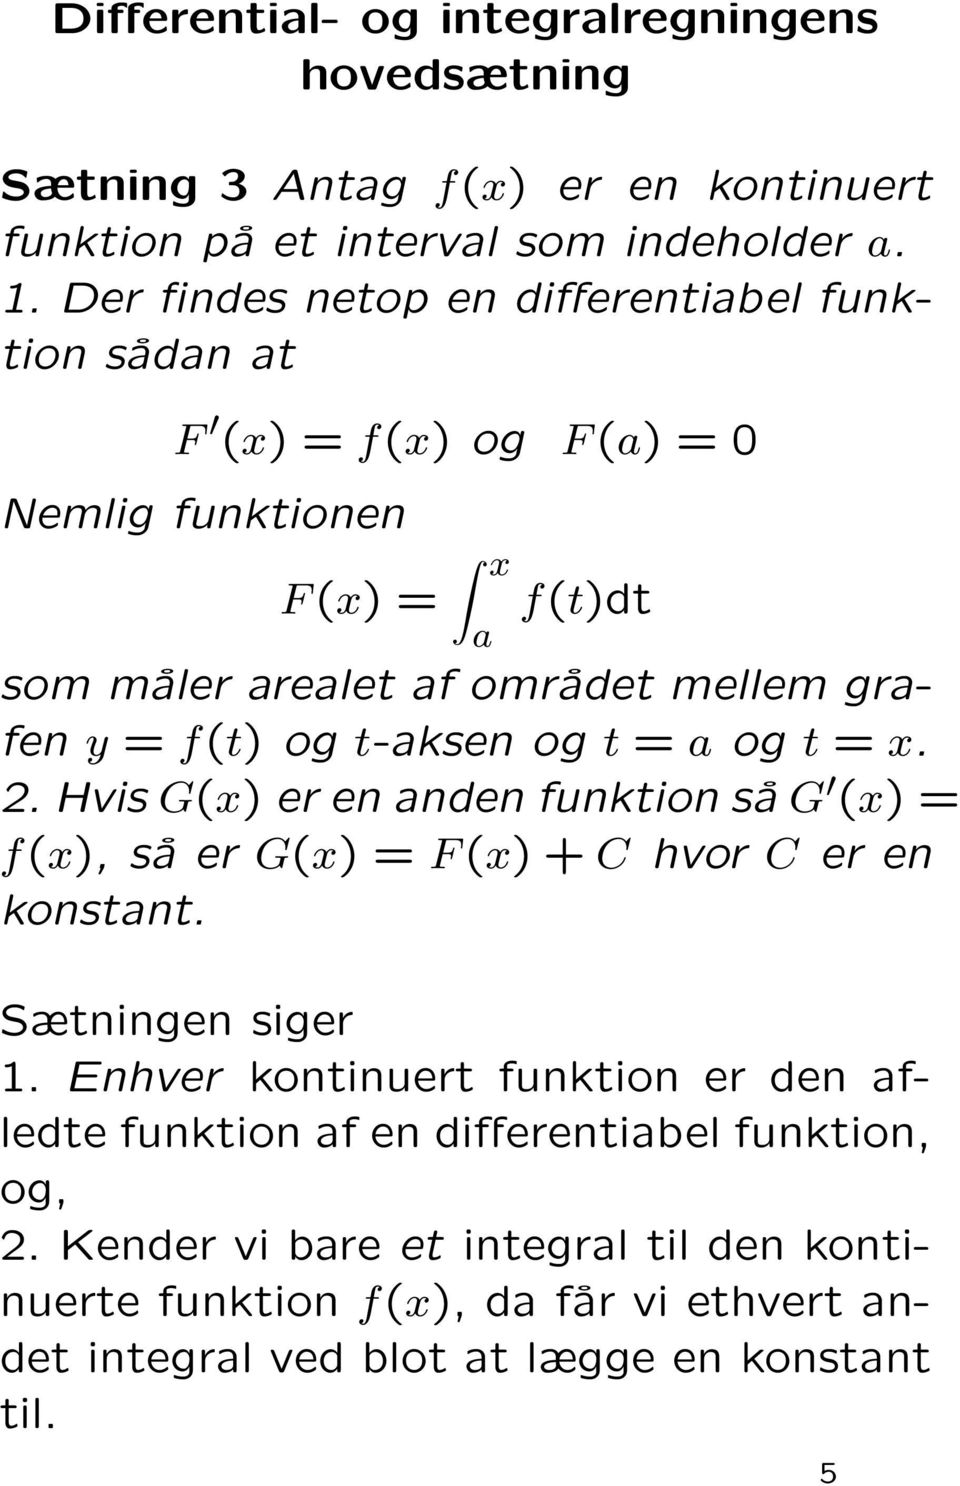 f(t) og t-aksen og t = a og t = x. 2. Hvis G(x) er en anden funktion så G (x) = f(x), så er G(x) = F (x) + C hvor C er en konstant. Sætningen siger.